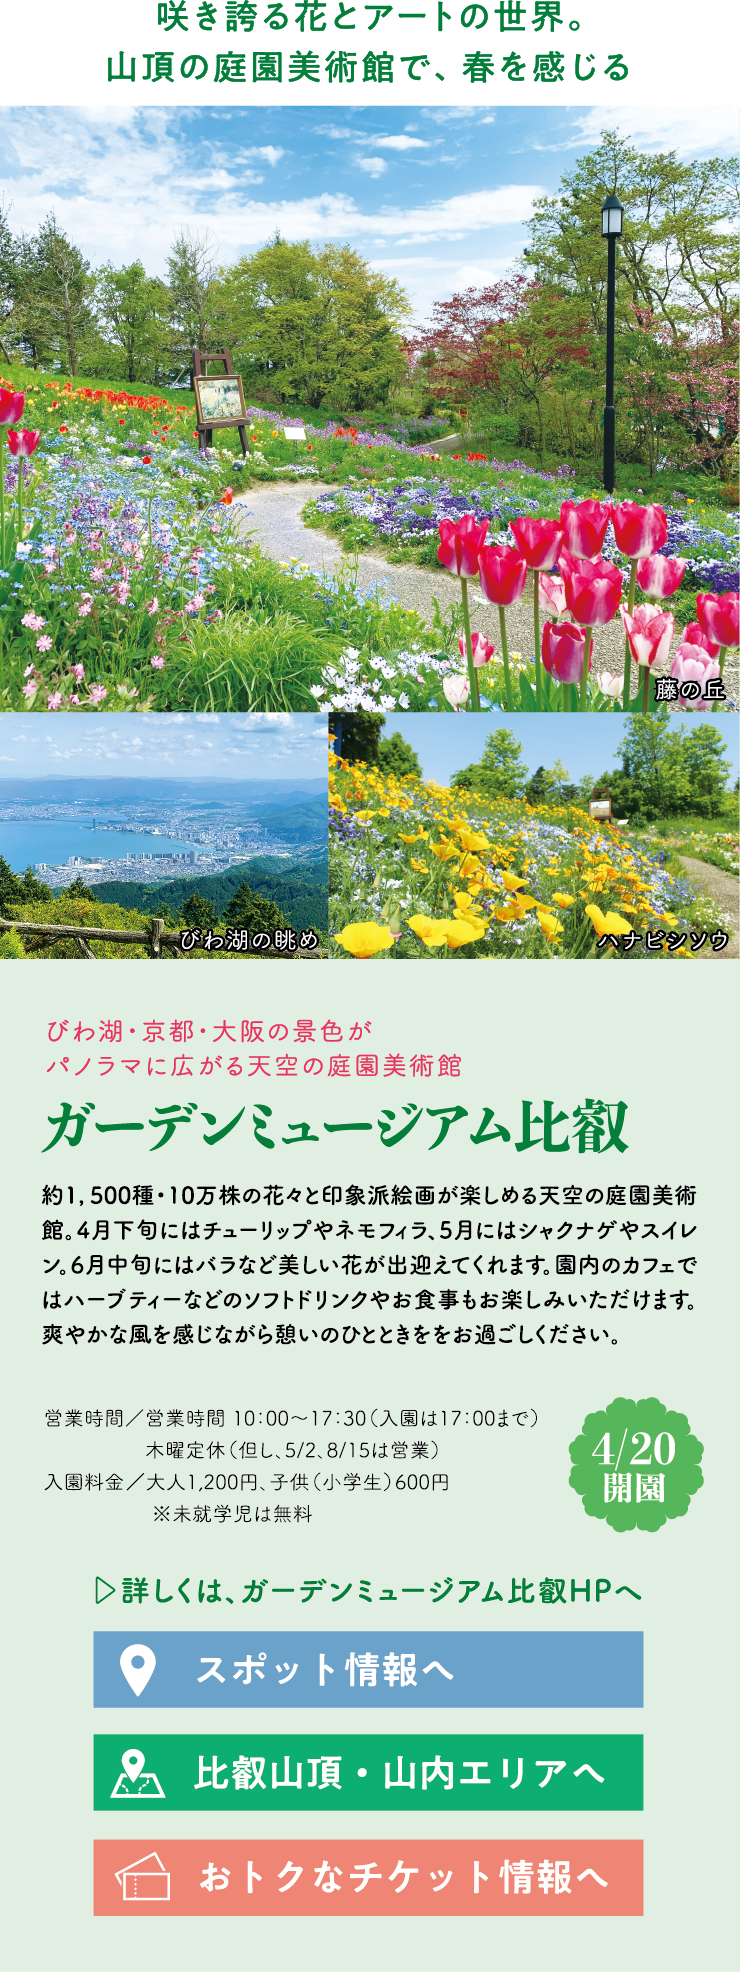 咲き誇る花とアートの世界。山頂の庭園美術館で、春を感じる びわ湖・京都・大阪の景色がパノラマに広がる天空の庭園美術館 ガーデンミュージアム比叡 約1,500種・10万株の花々と印象派絵画が楽しめる天空の庭園美術館。4月下旬にはチューリップやネモフィラ、5月にはシャクナゲやスイレン。6月中旬にはバラなど美しい花が出迎えてくれます。園内のカフェではハーブティーなどのソフトドリンクやお食事もお楽しみいただけます。爽やかな風を感じながら憩いのひとときををお過ごしください。【4/20開園】営業時間／営業時間 10：00～17：30（入園は17：00まで）木曜定休（但し、5/2、8/15は営業）入園料金／大人1,200円、子供（小学生）600円 ※未就学児は無料